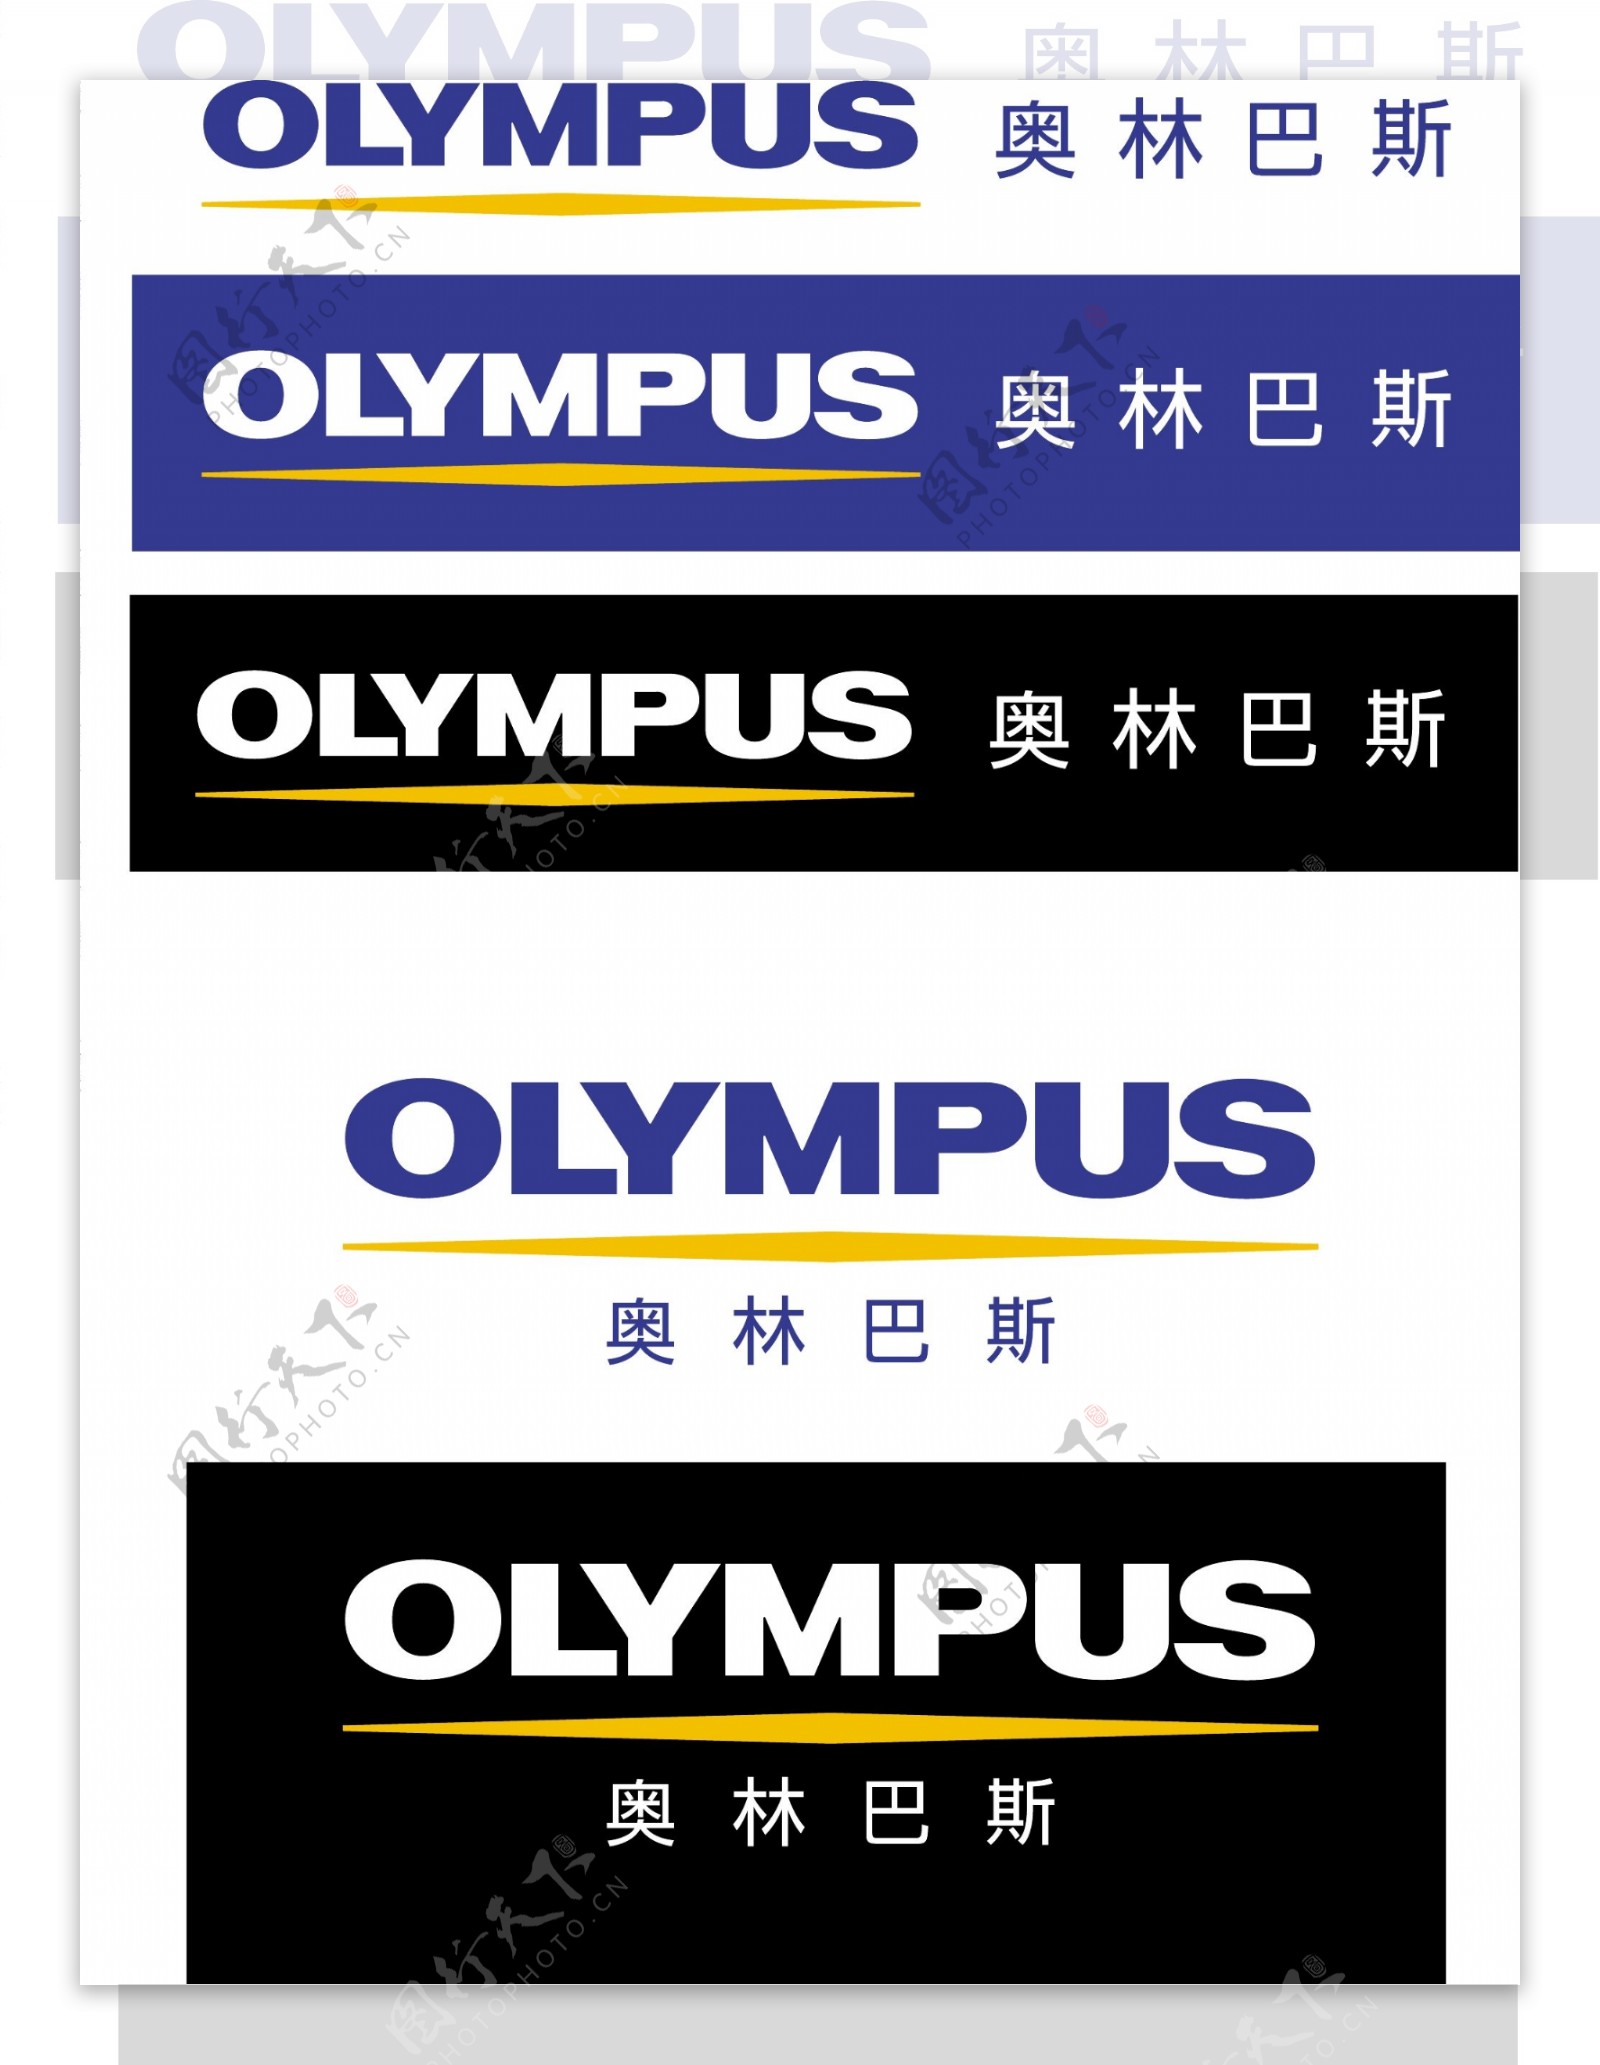 奥林巴斯logoe系统图片